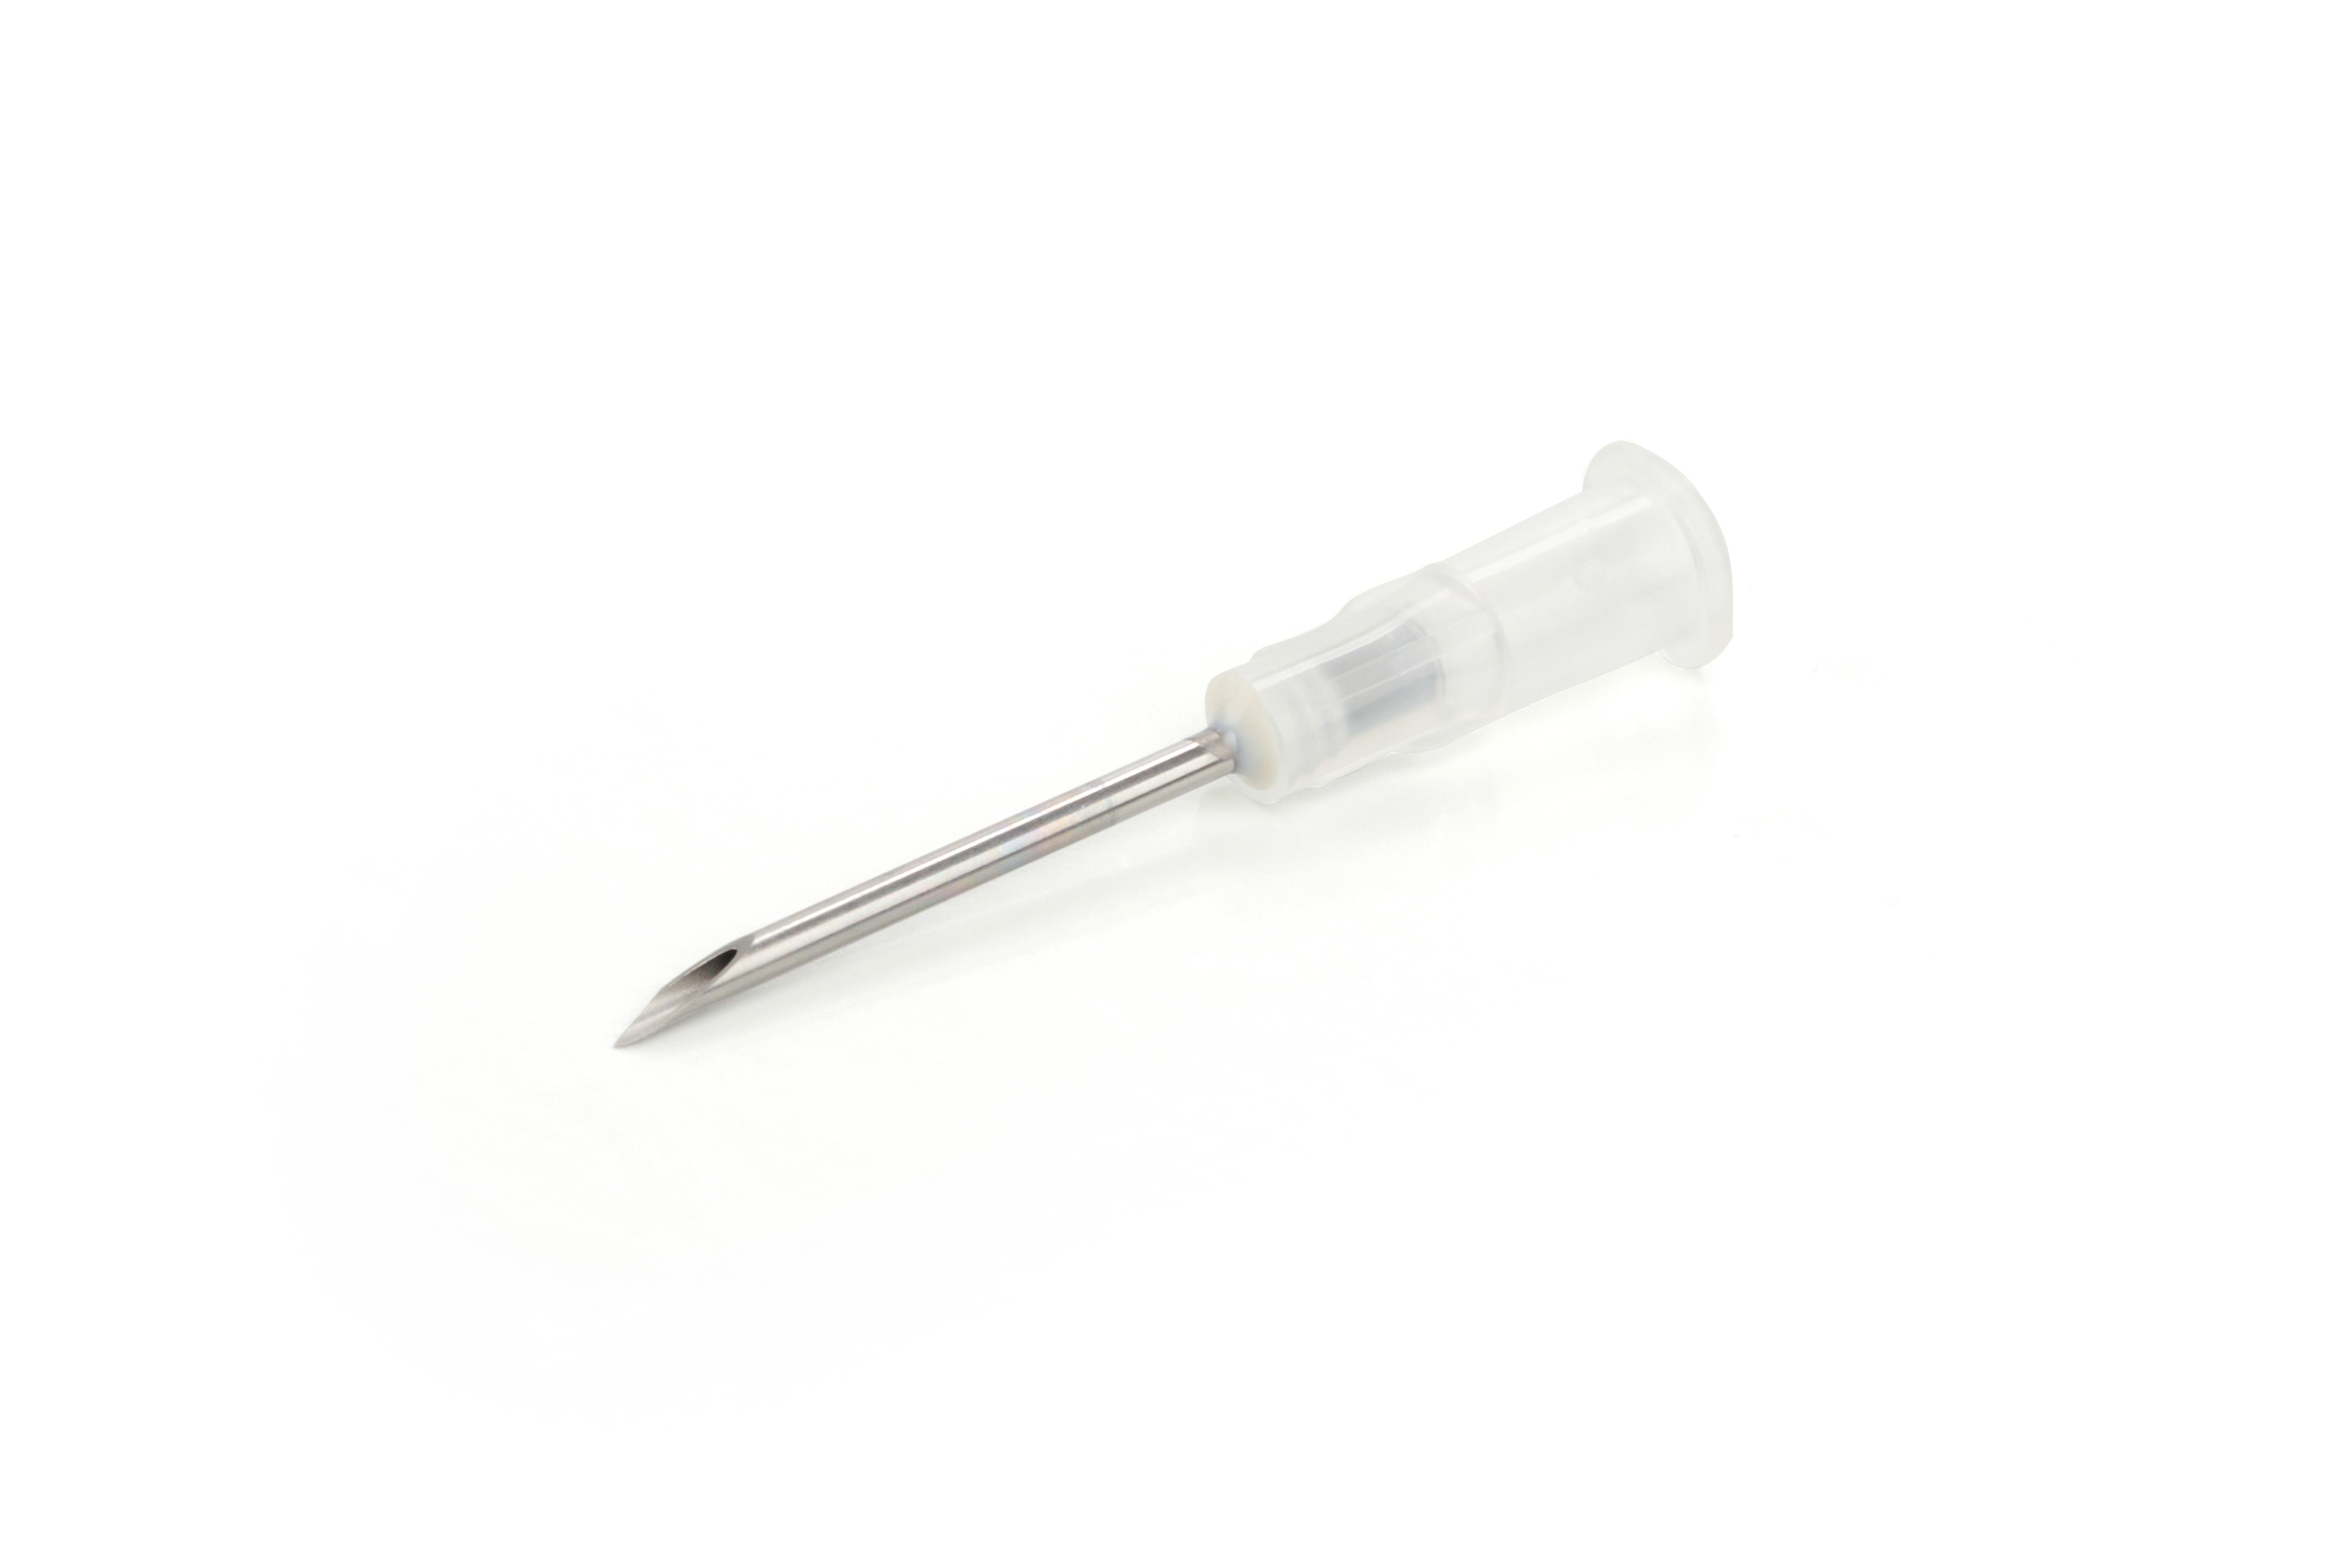 BOVIVET Reinforced Disposable Needle, 1.6 x 25 mm, luer lock, 16G x 1'', 100/pk